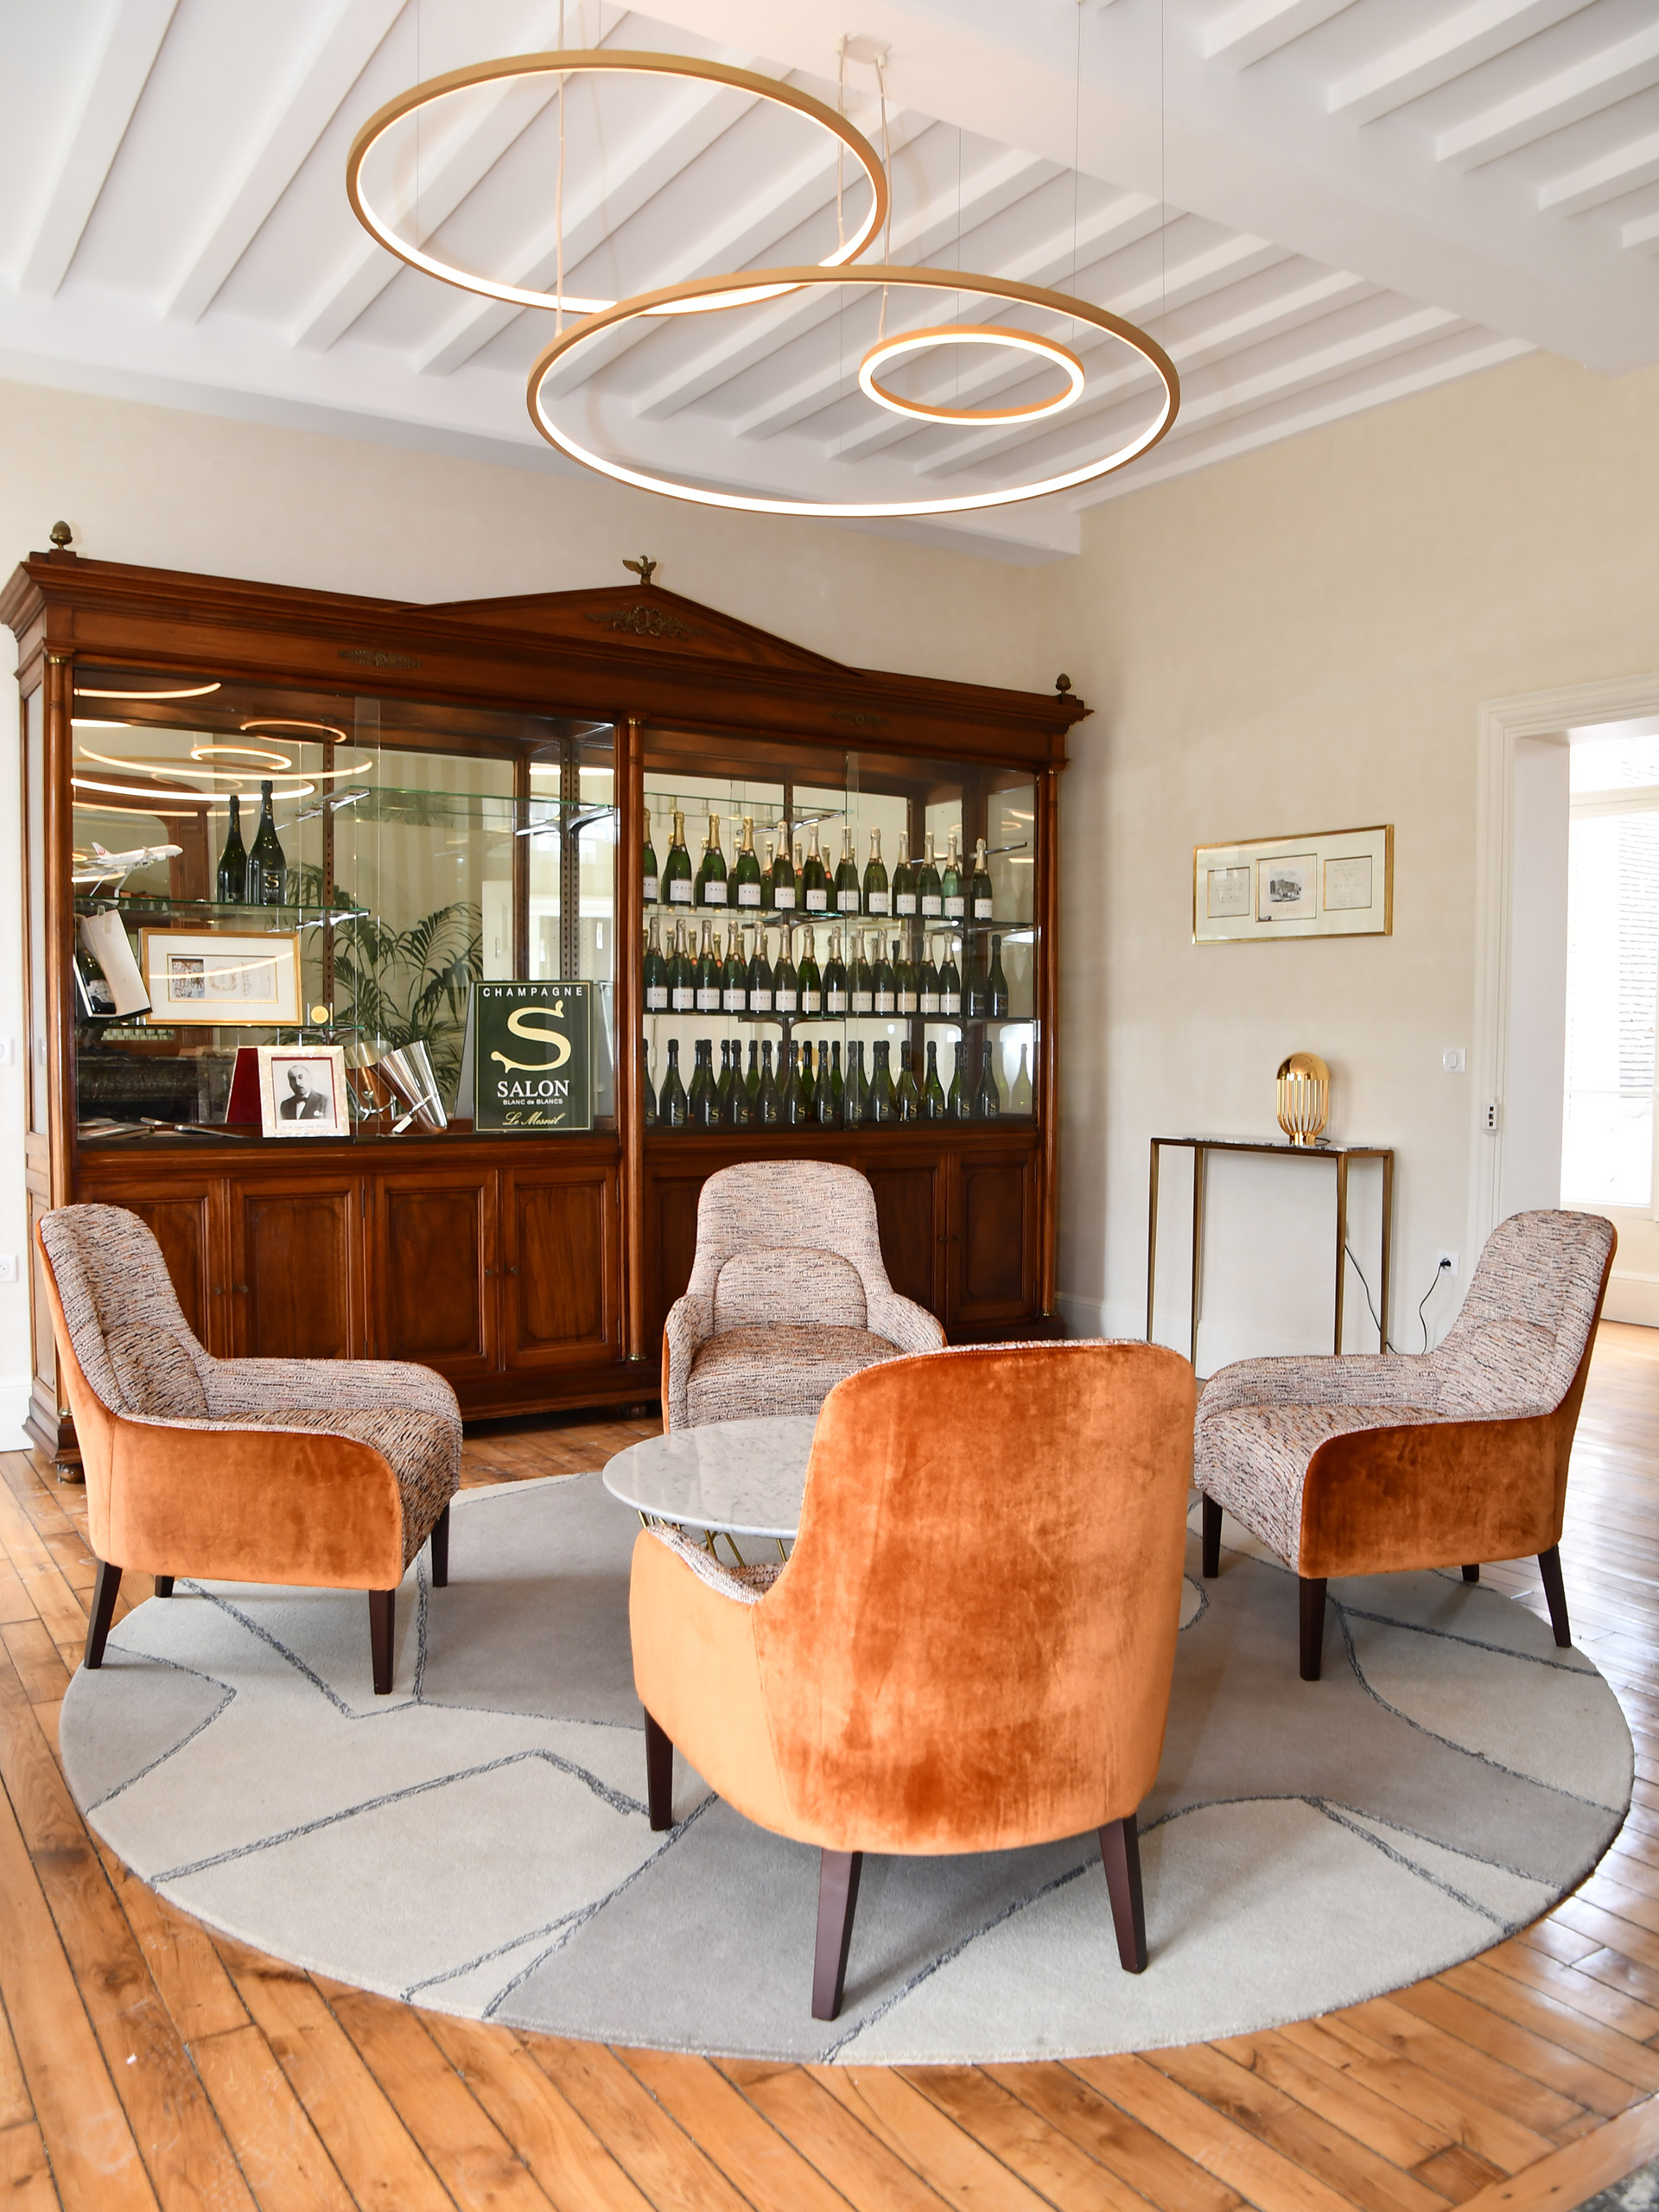 Rénovation et aménagement de la Réception, Maison de Champagne Salon Delamotte, par Borella Art Design